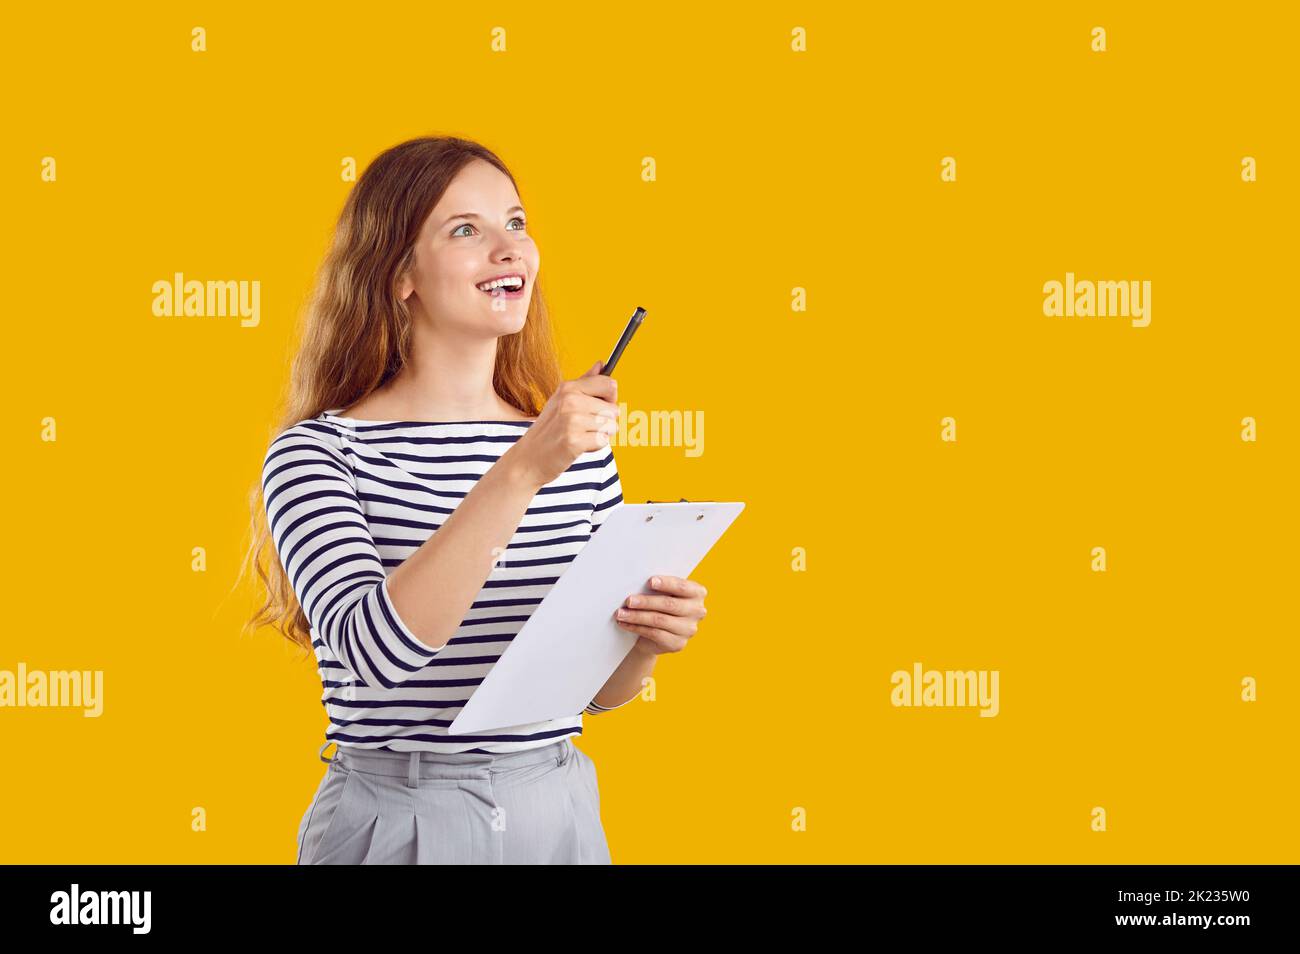 Felice eccitante giovane donna con la penna e la clipboard in mano che ha un'idea eccellente. Foto Stock